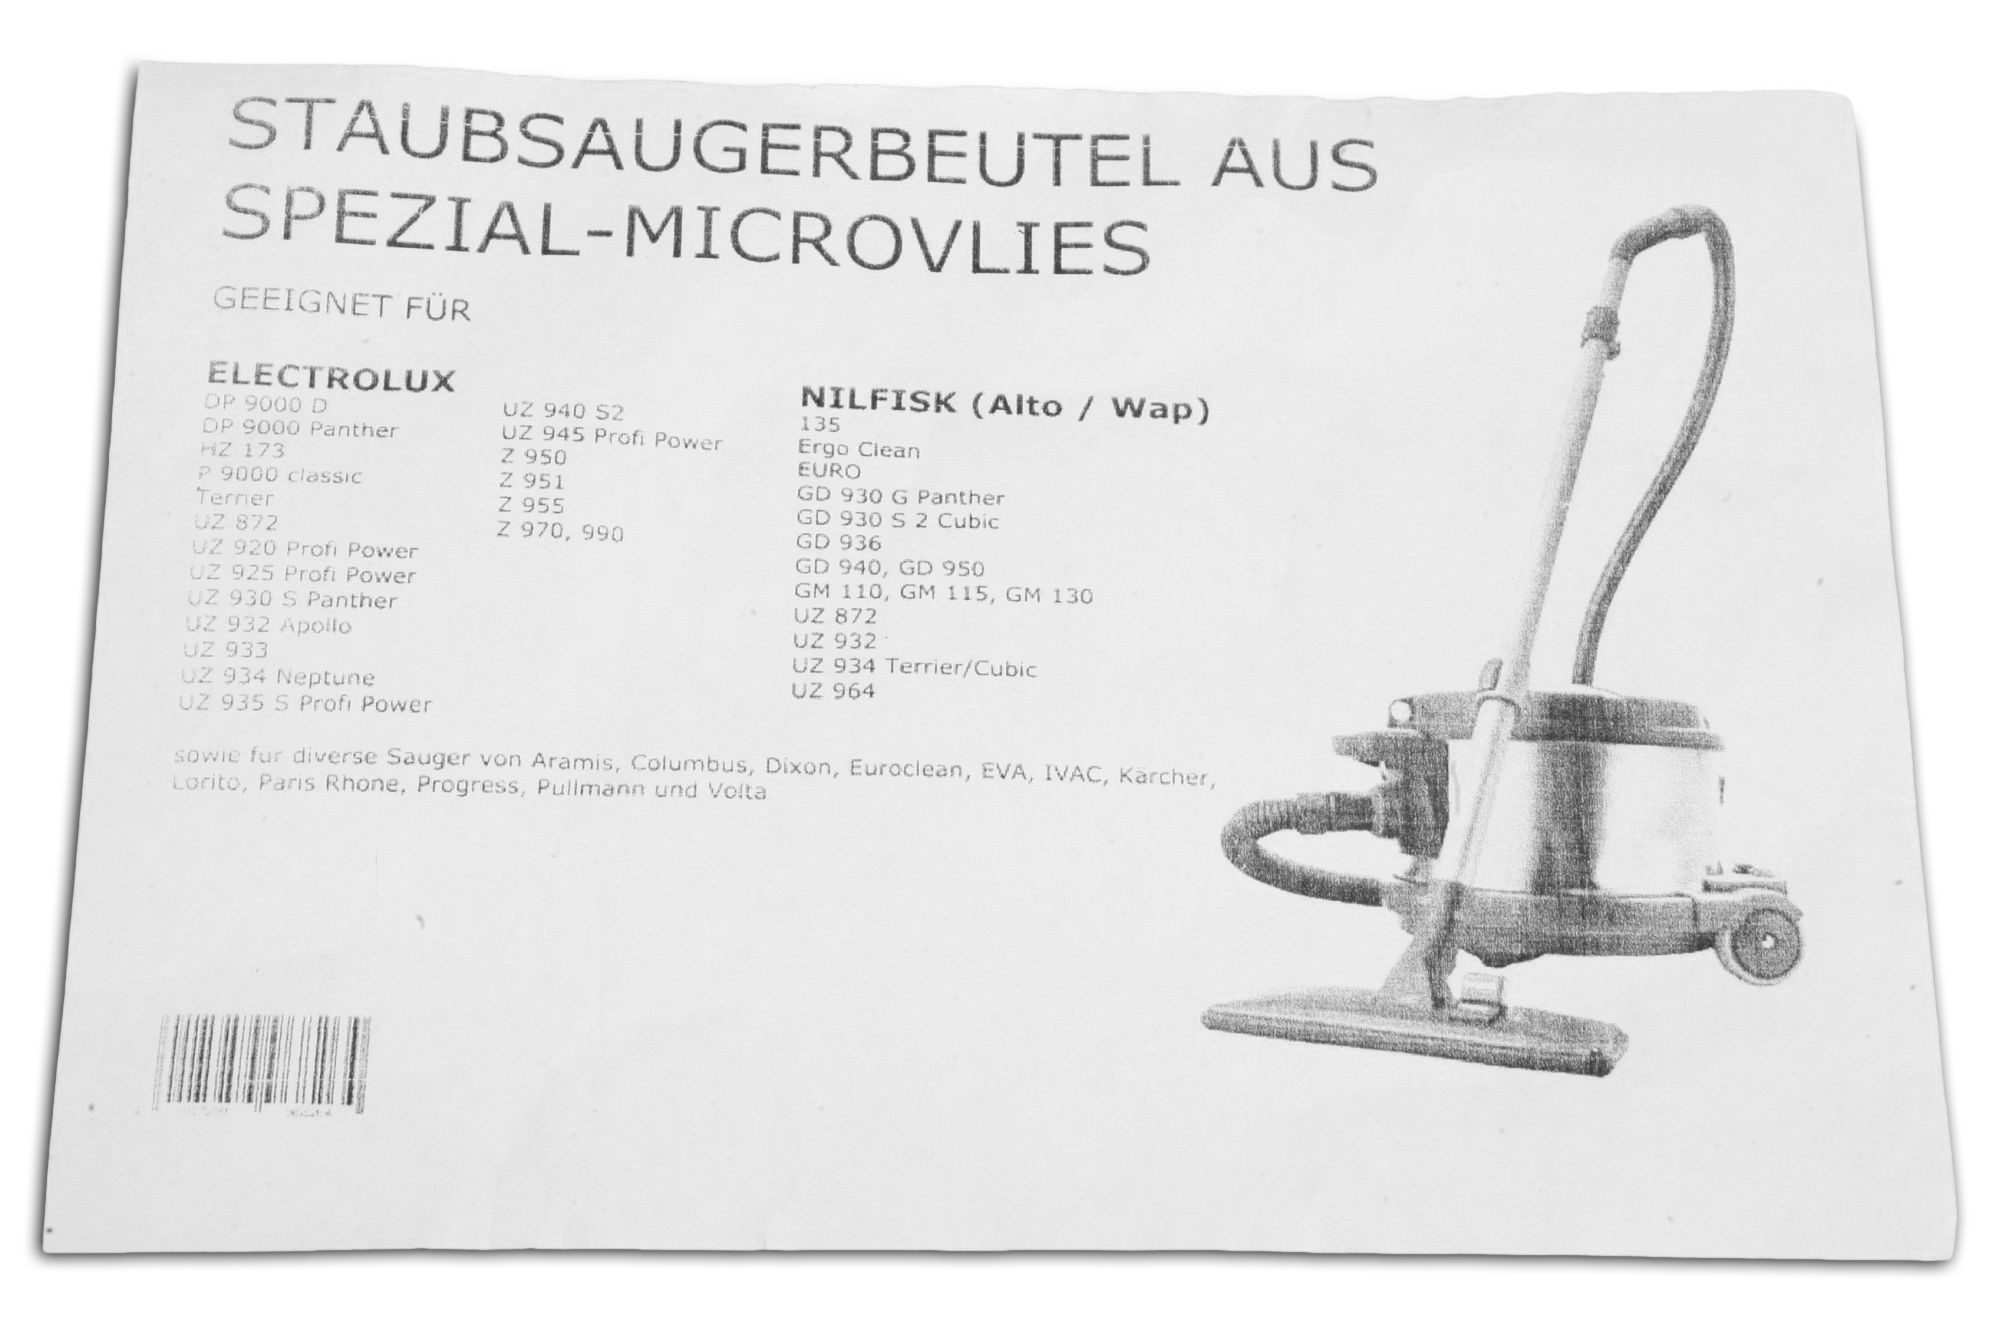 10 Staubsaugerbeutel Z951 STAUBSAUGERLADEN.DE für UZ 920, 925, 930, Staubbeutel Elextrolux